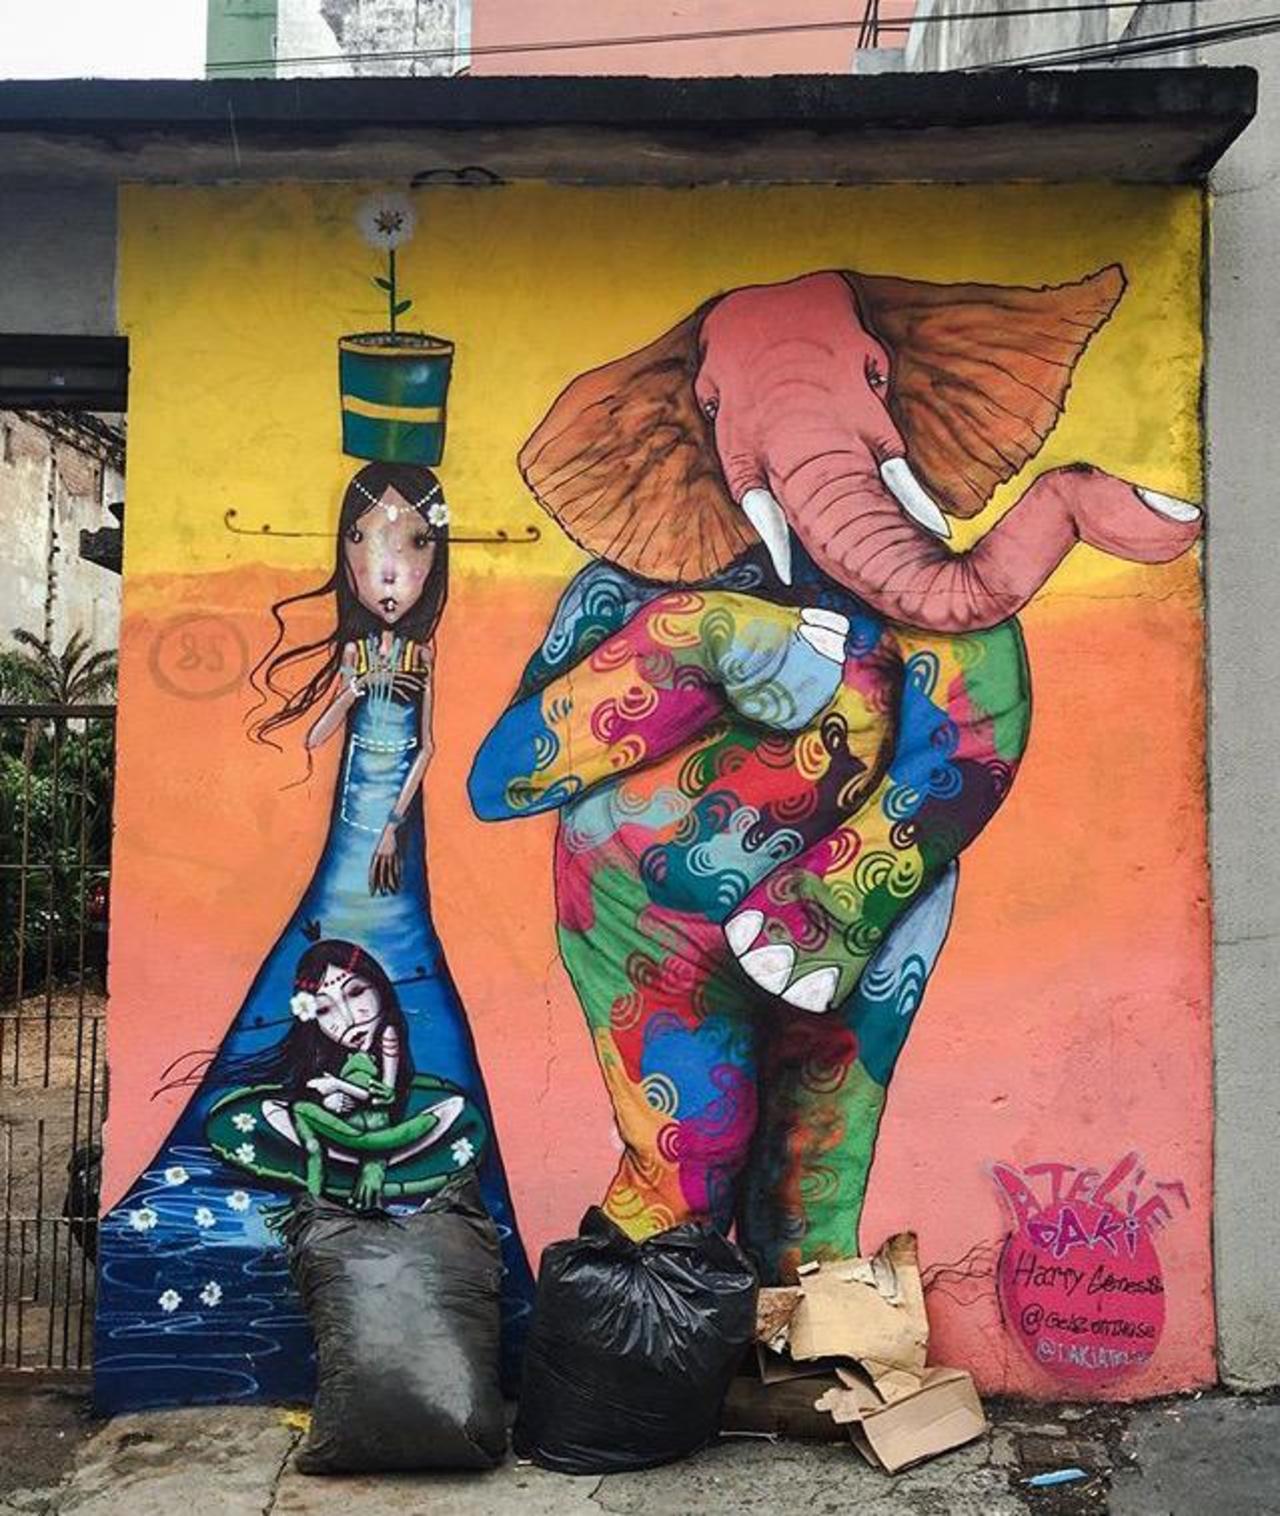 Street Art by Harry Geneis & Gelson in São Paulo 

#art #mural #graffiti #streetart http://t.co/chKkv1DVkR